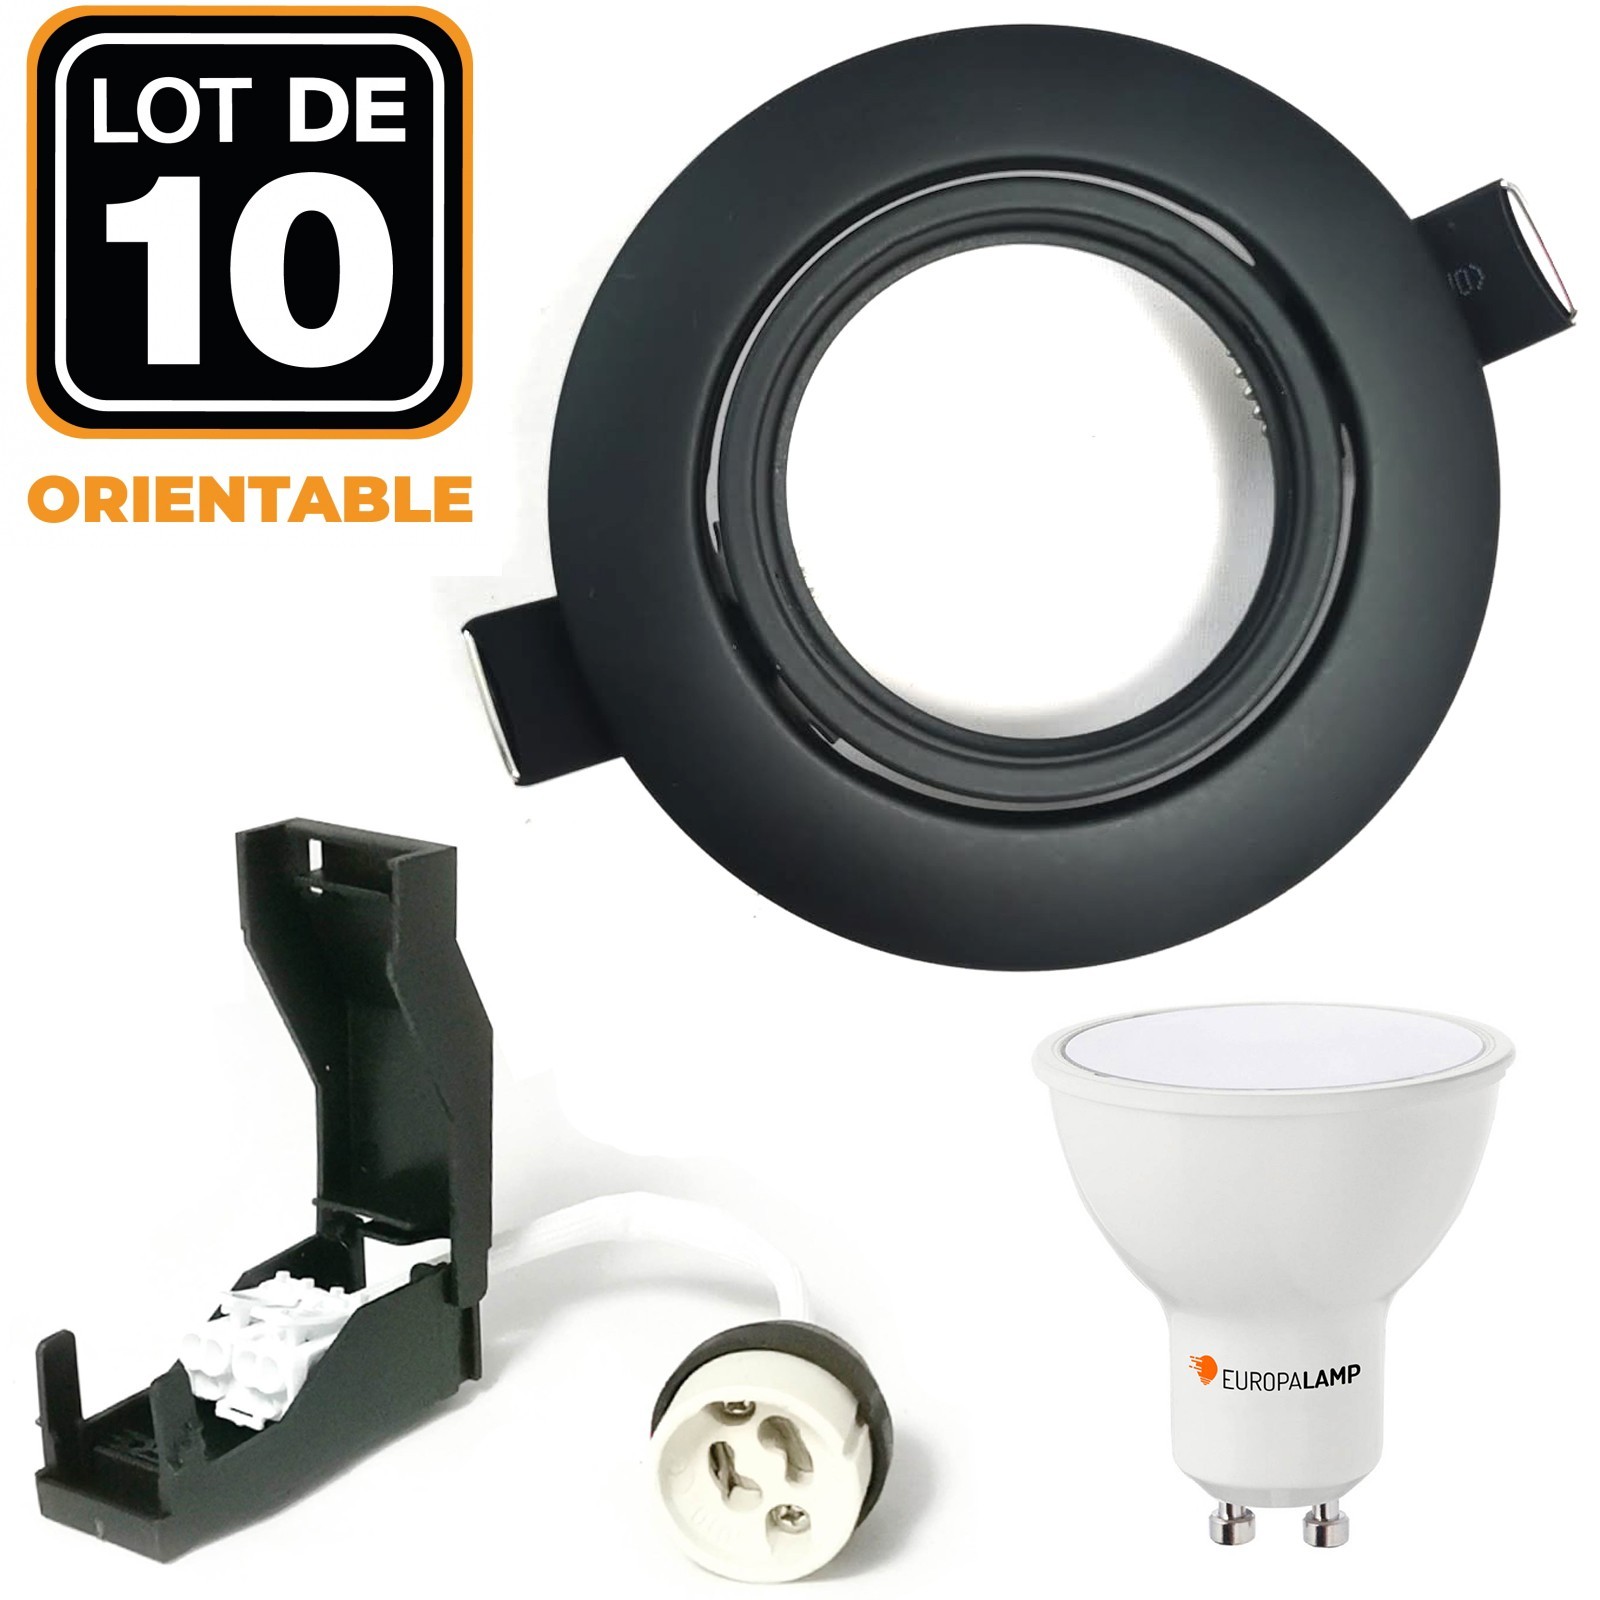 Spot LED encastrable 10W pour utilisation intérieure ou extérieure